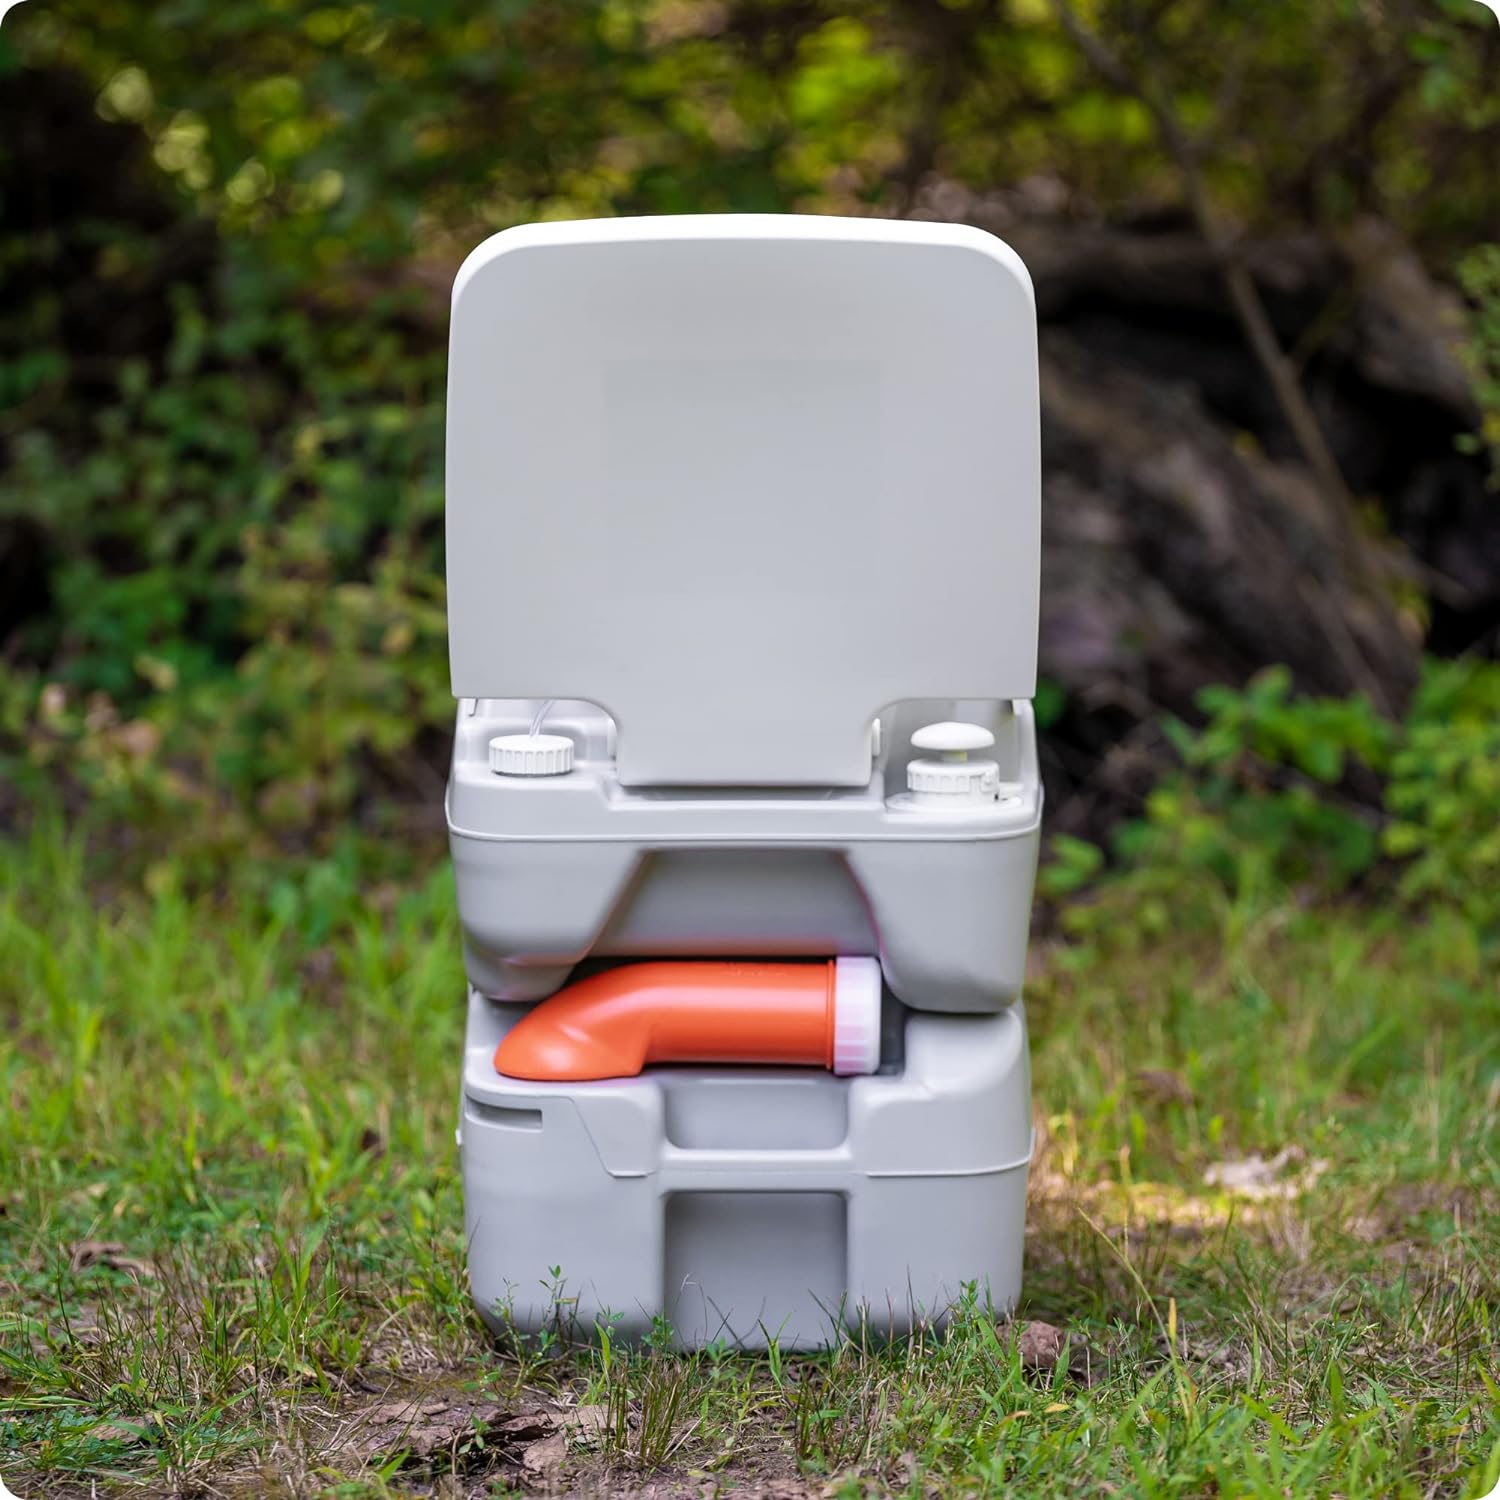 Alpcour Portable Toilet Review